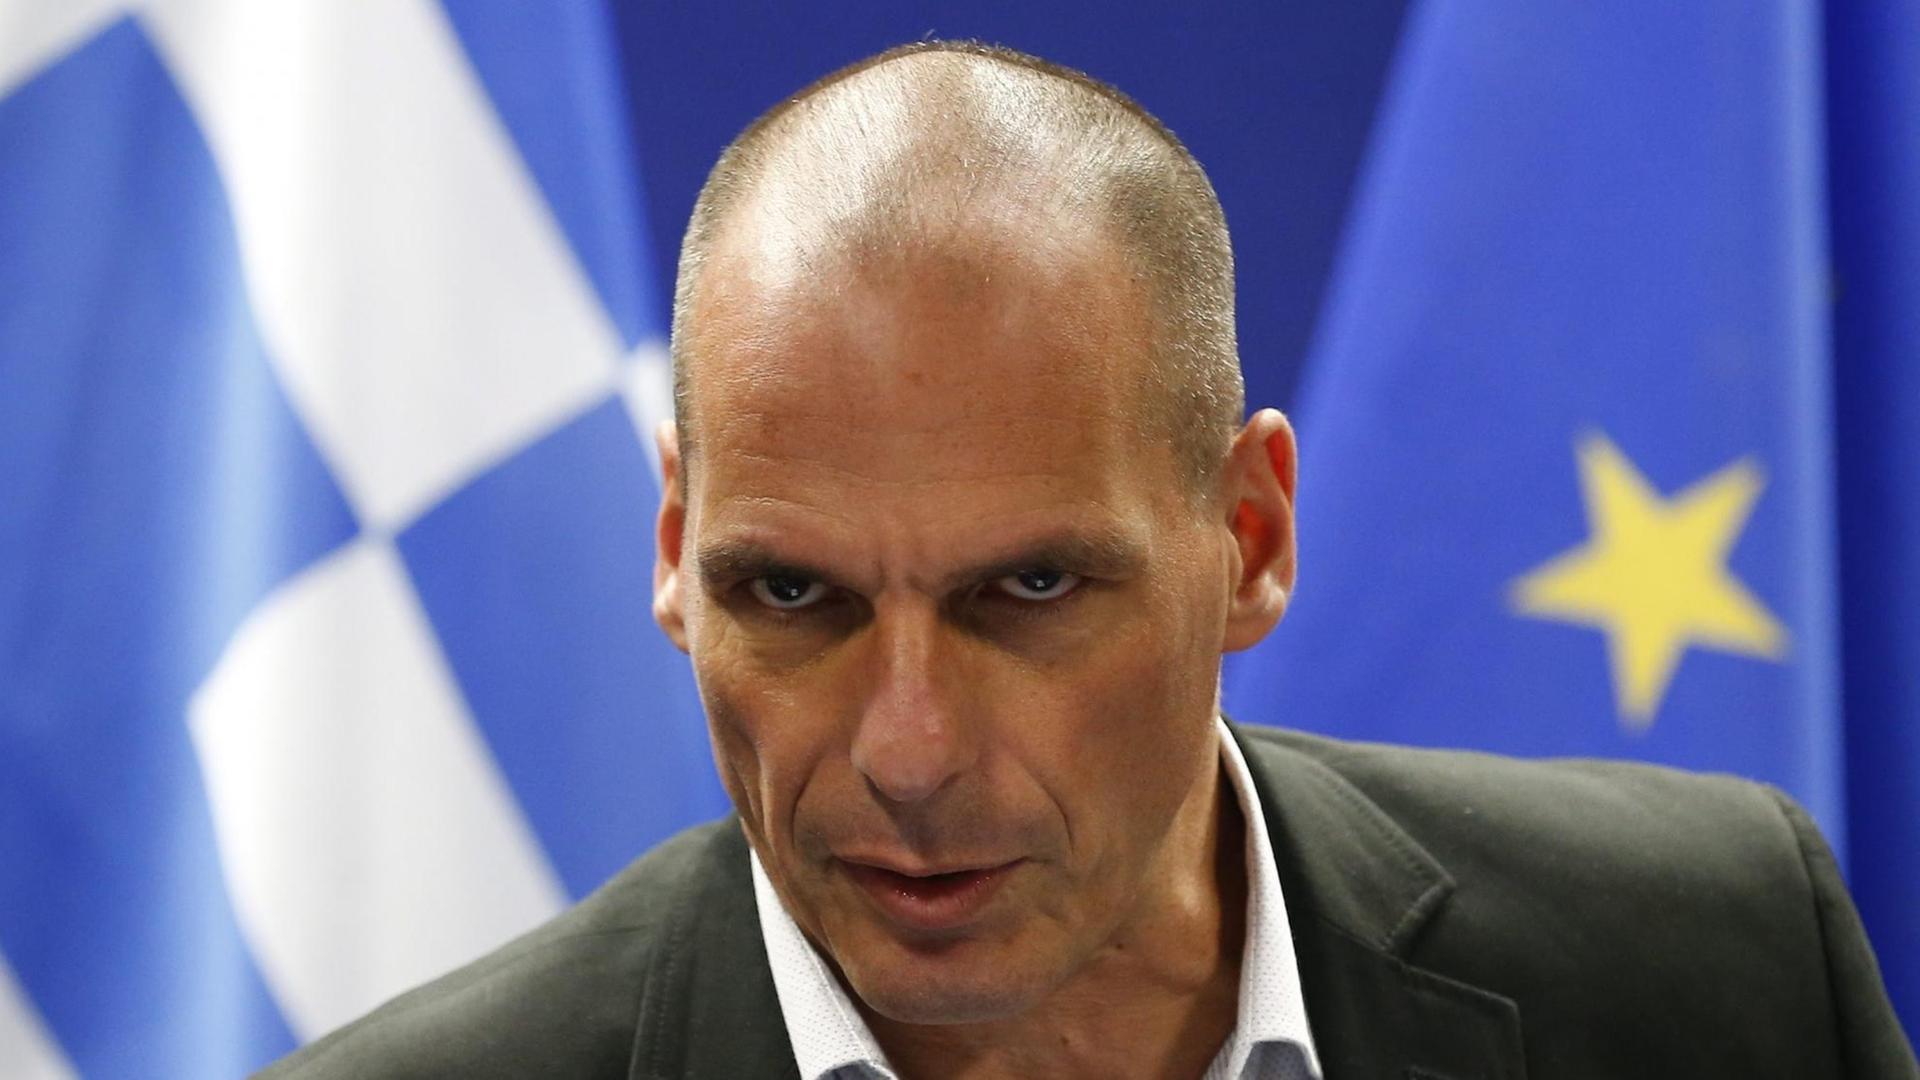 Der griechische Finanzminister Yanis Varoufakis schaut grimmig während einer Pressekonferenz am Ende des Eurogruppentreffens im belgischen Brüssel am 11.05.2015.